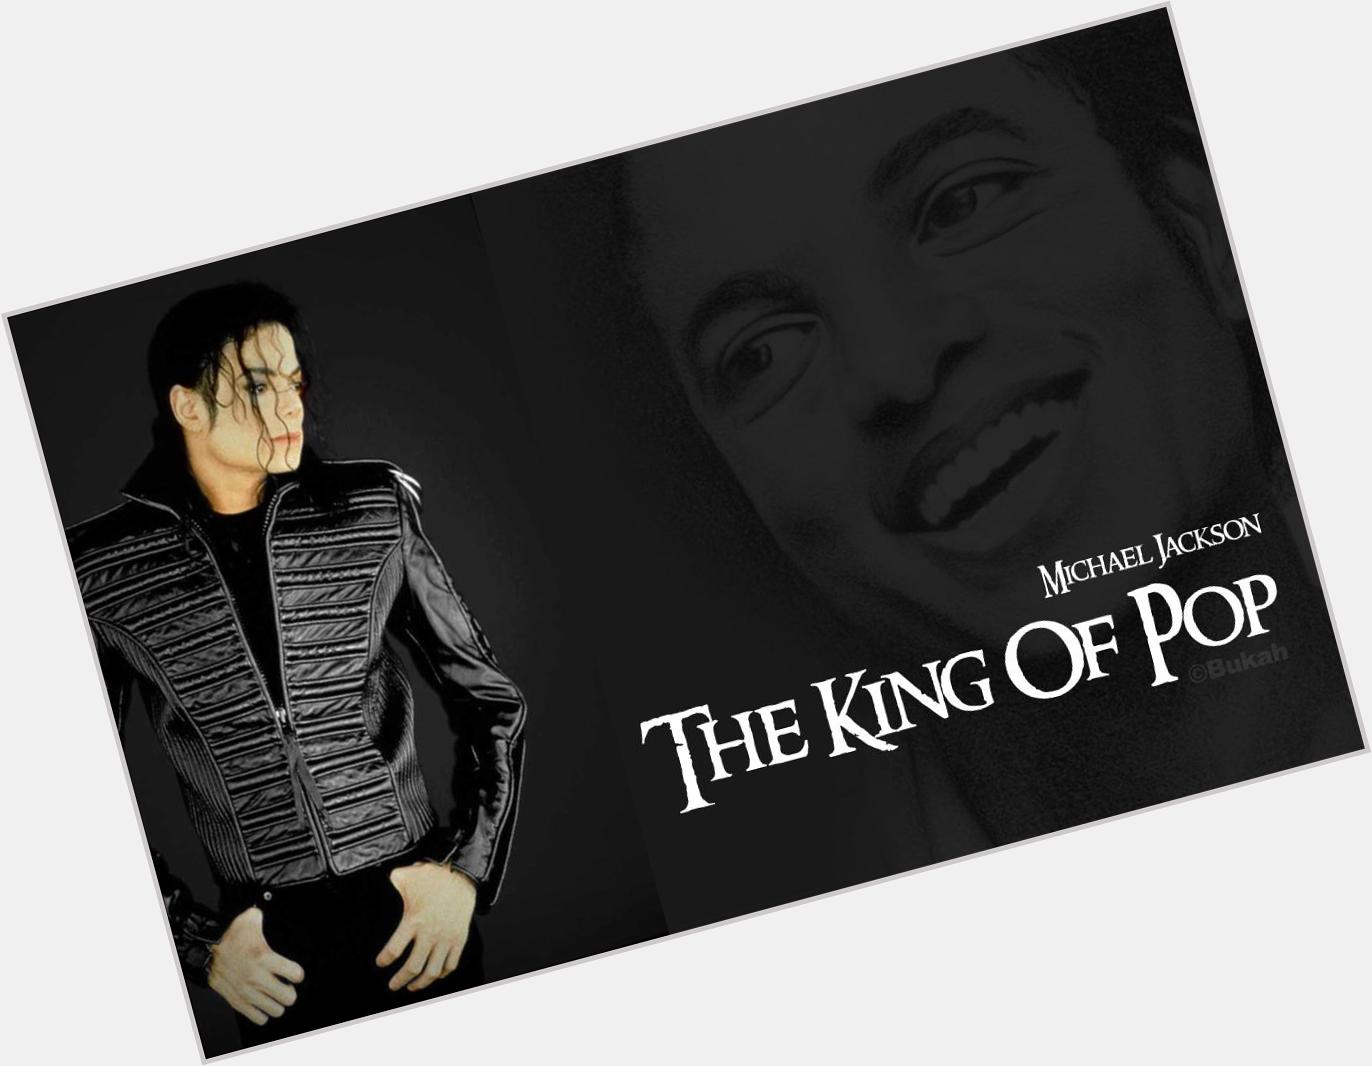 Happy birthday Michael Jackson se eri qui avresti compiuto 57 anni.

GRANDE!!! 